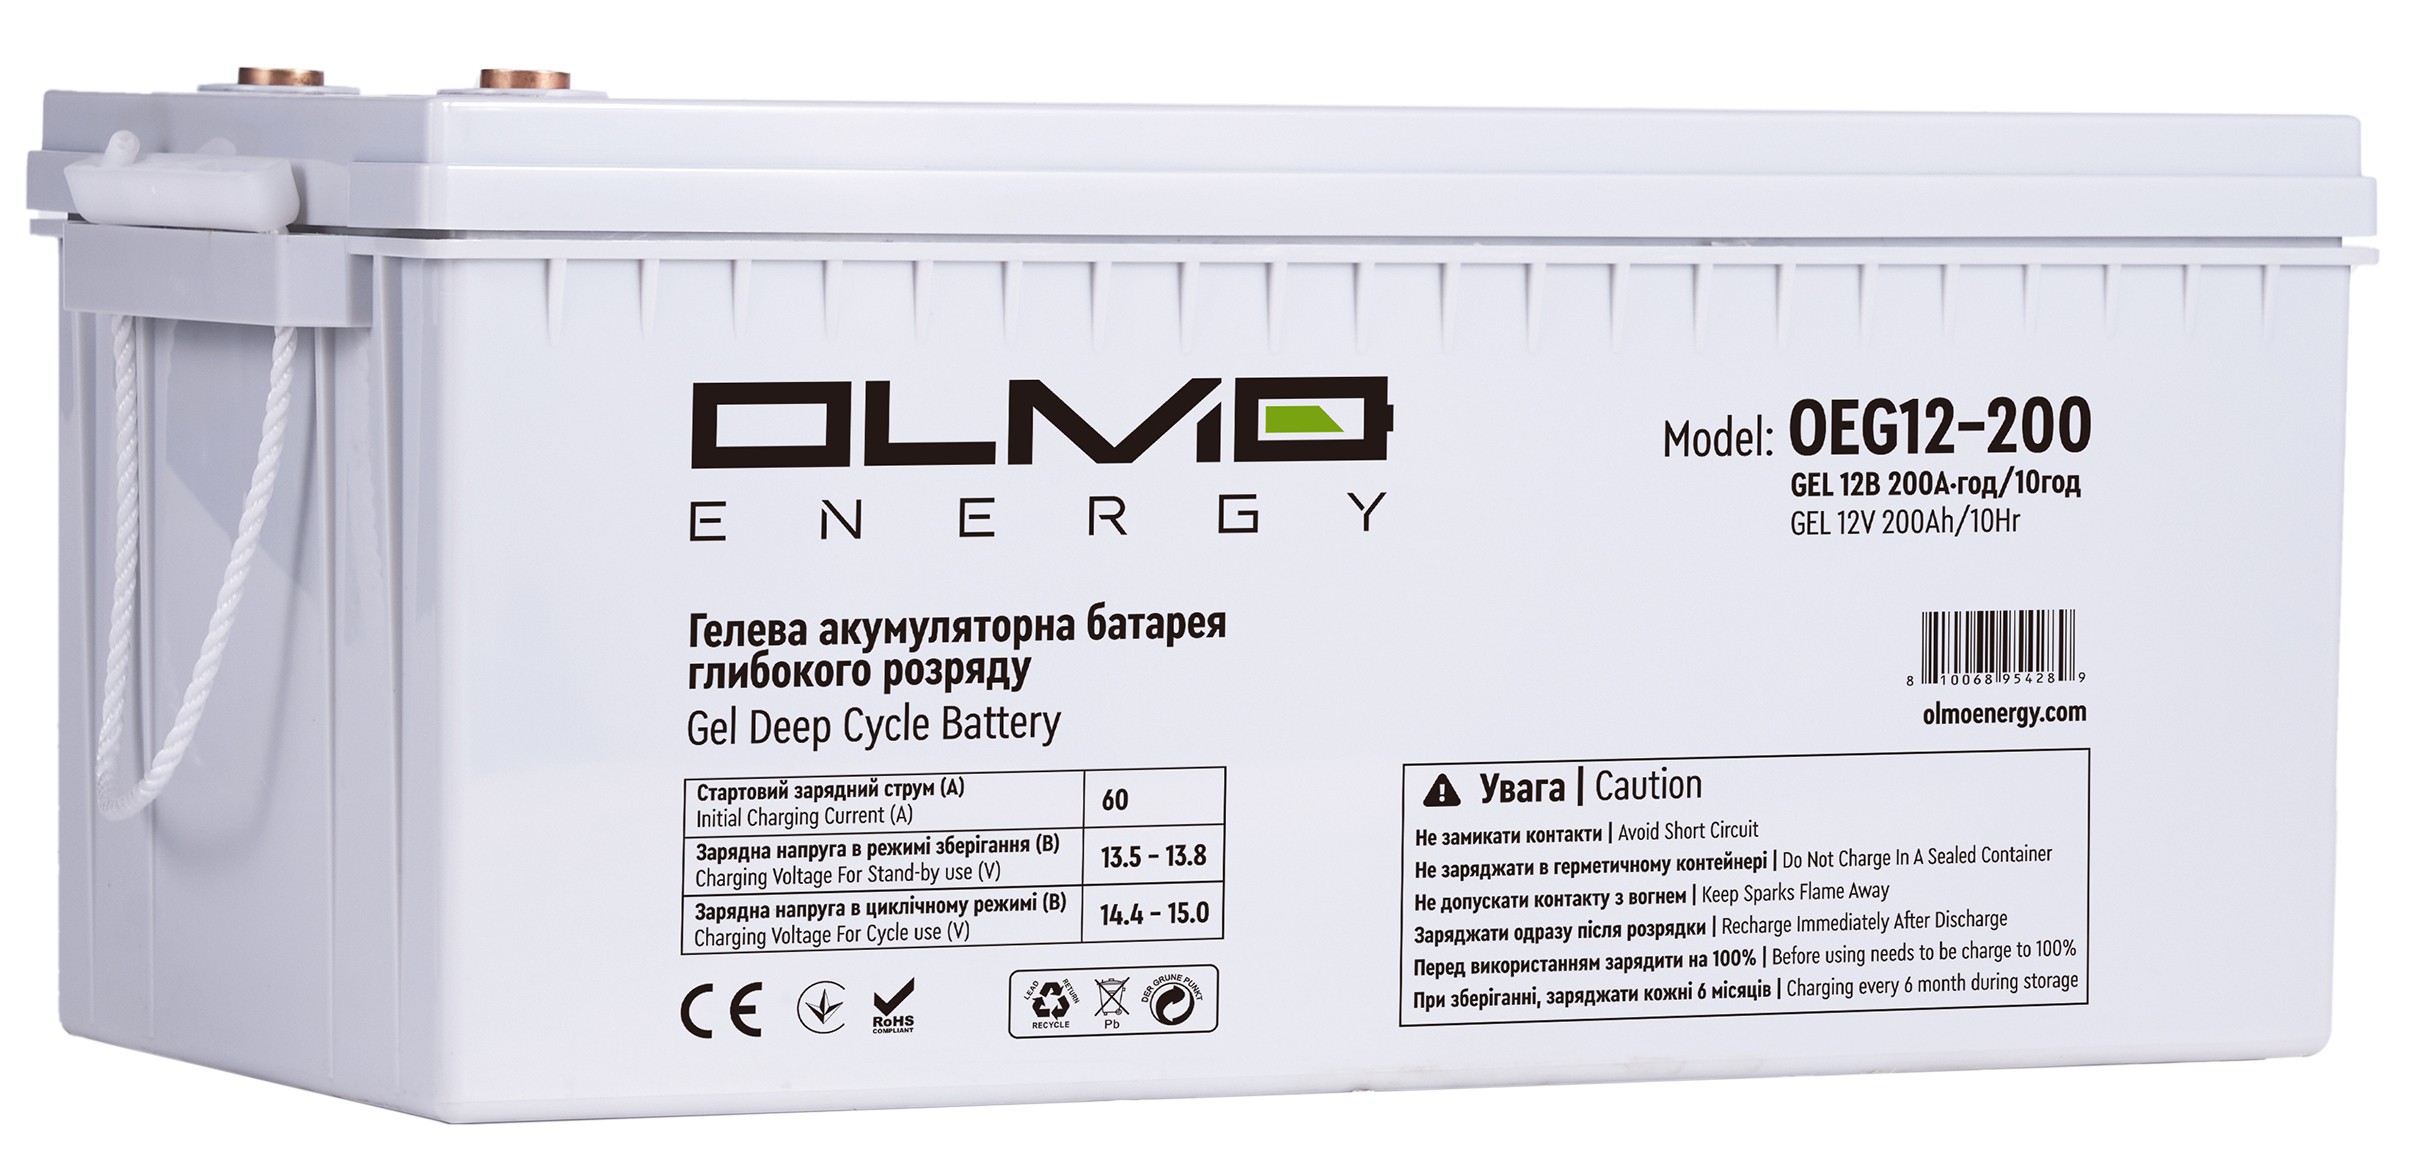 Отзывы аккумуляторная батарея OLMO Energy OEG12-200 в Украине